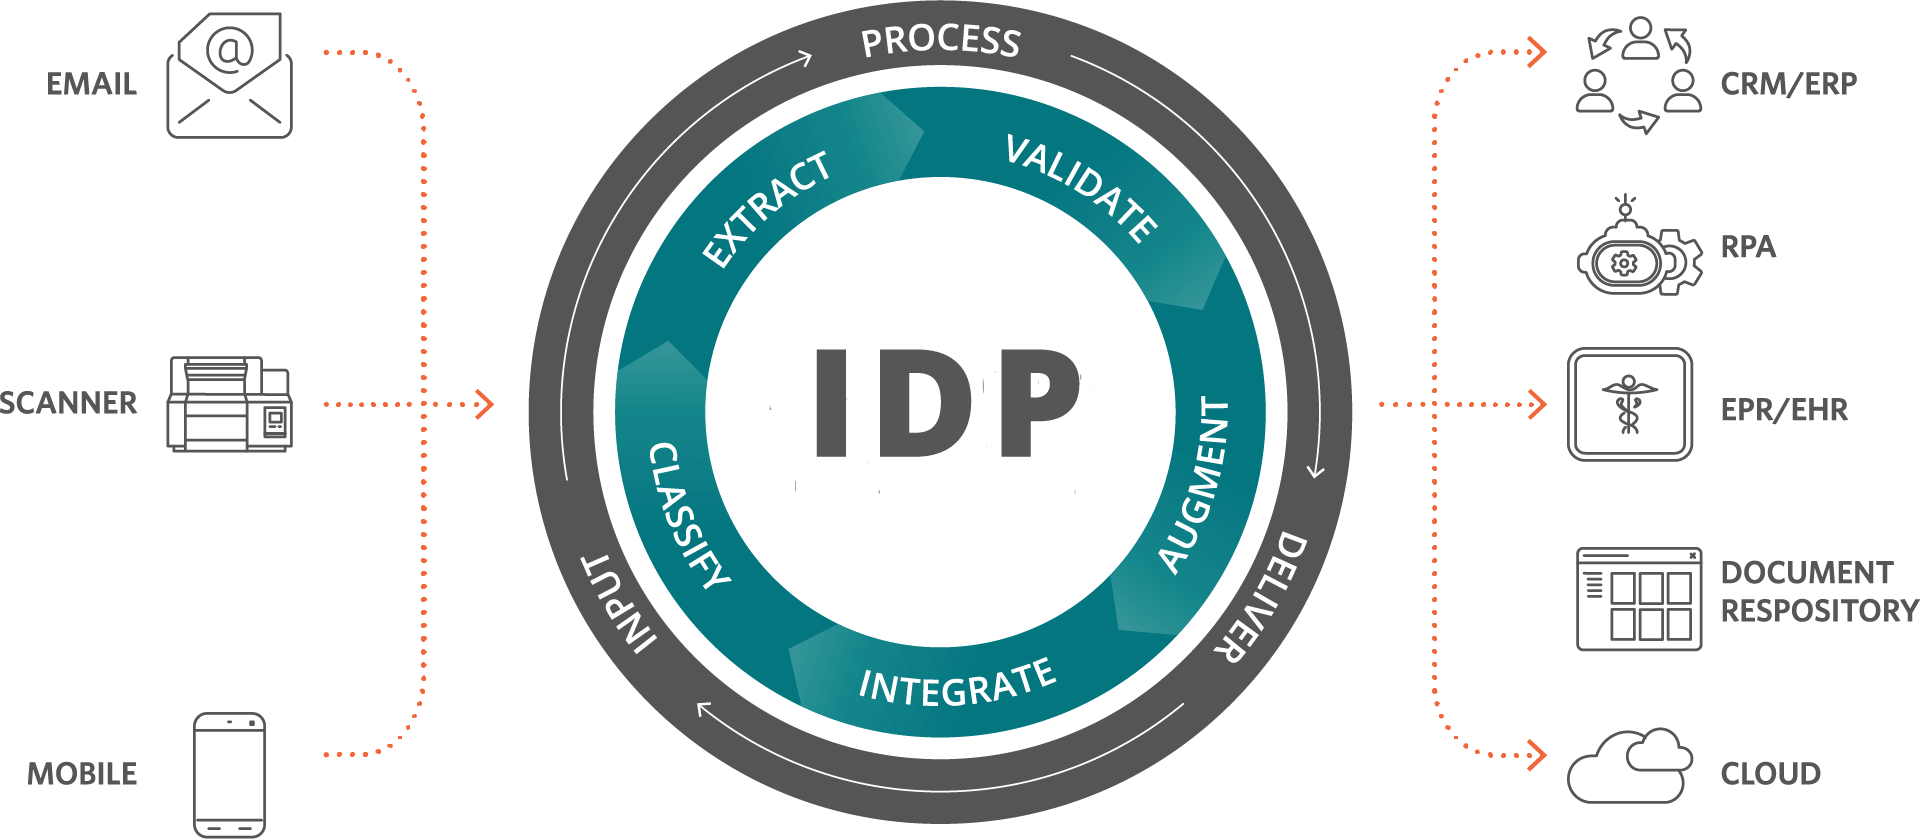 IDP 프로세스